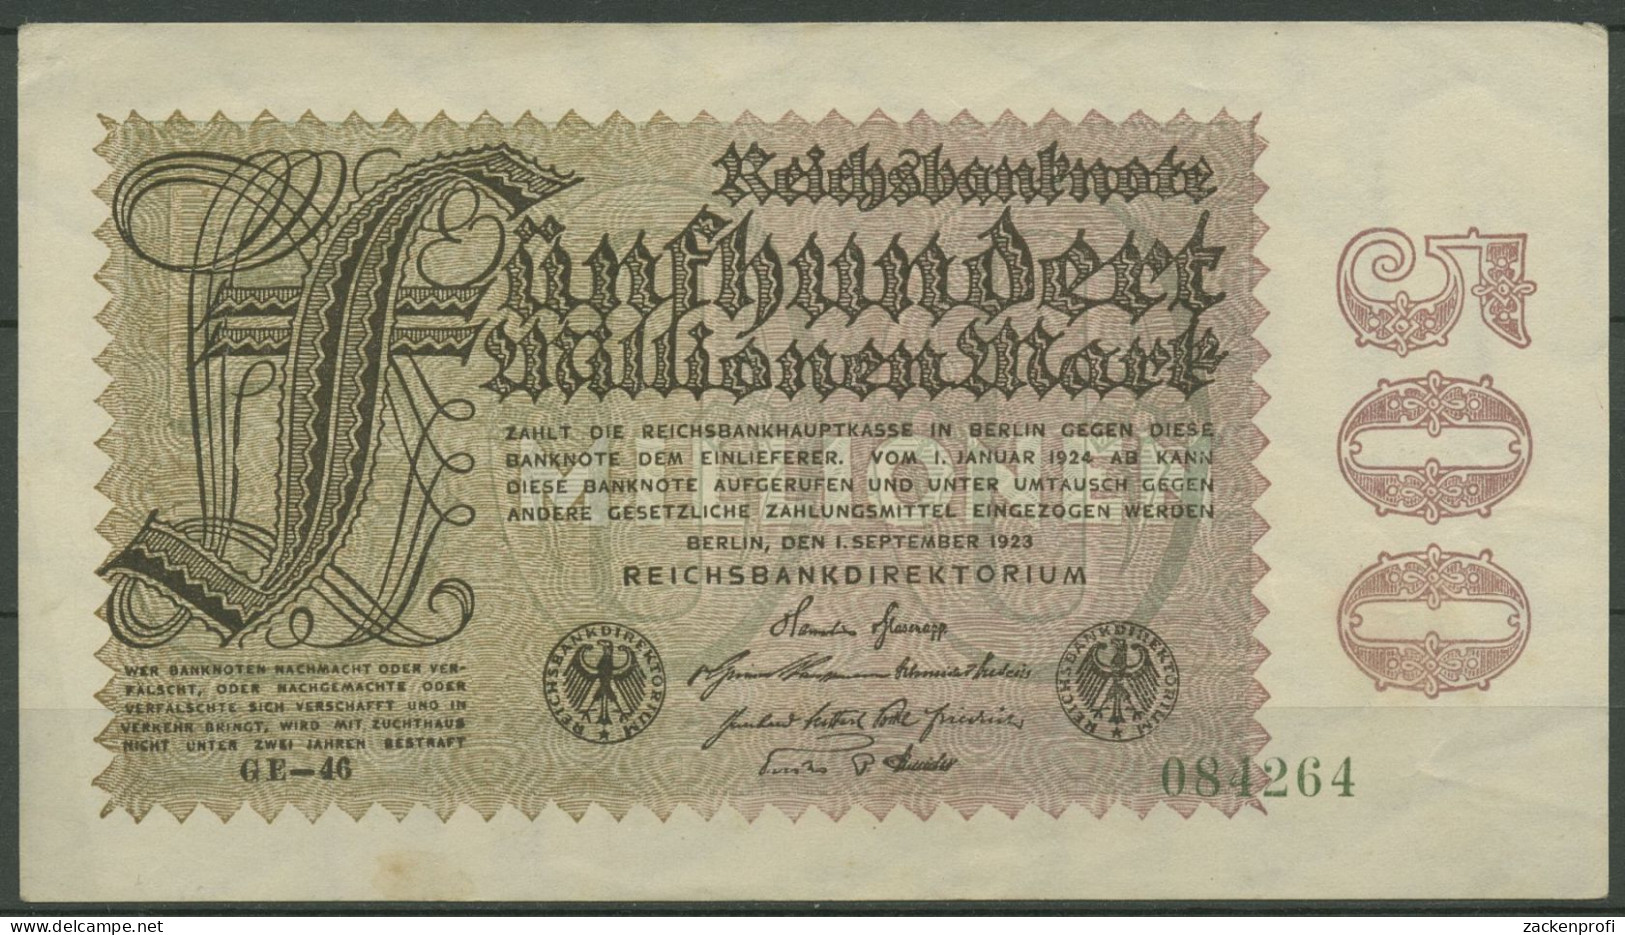 Dt. Reich 500 Millionen Mark 1923, DEU-125h FZ GE, Leicht Gebraucht (K1162) - 500 Miljoen Mark